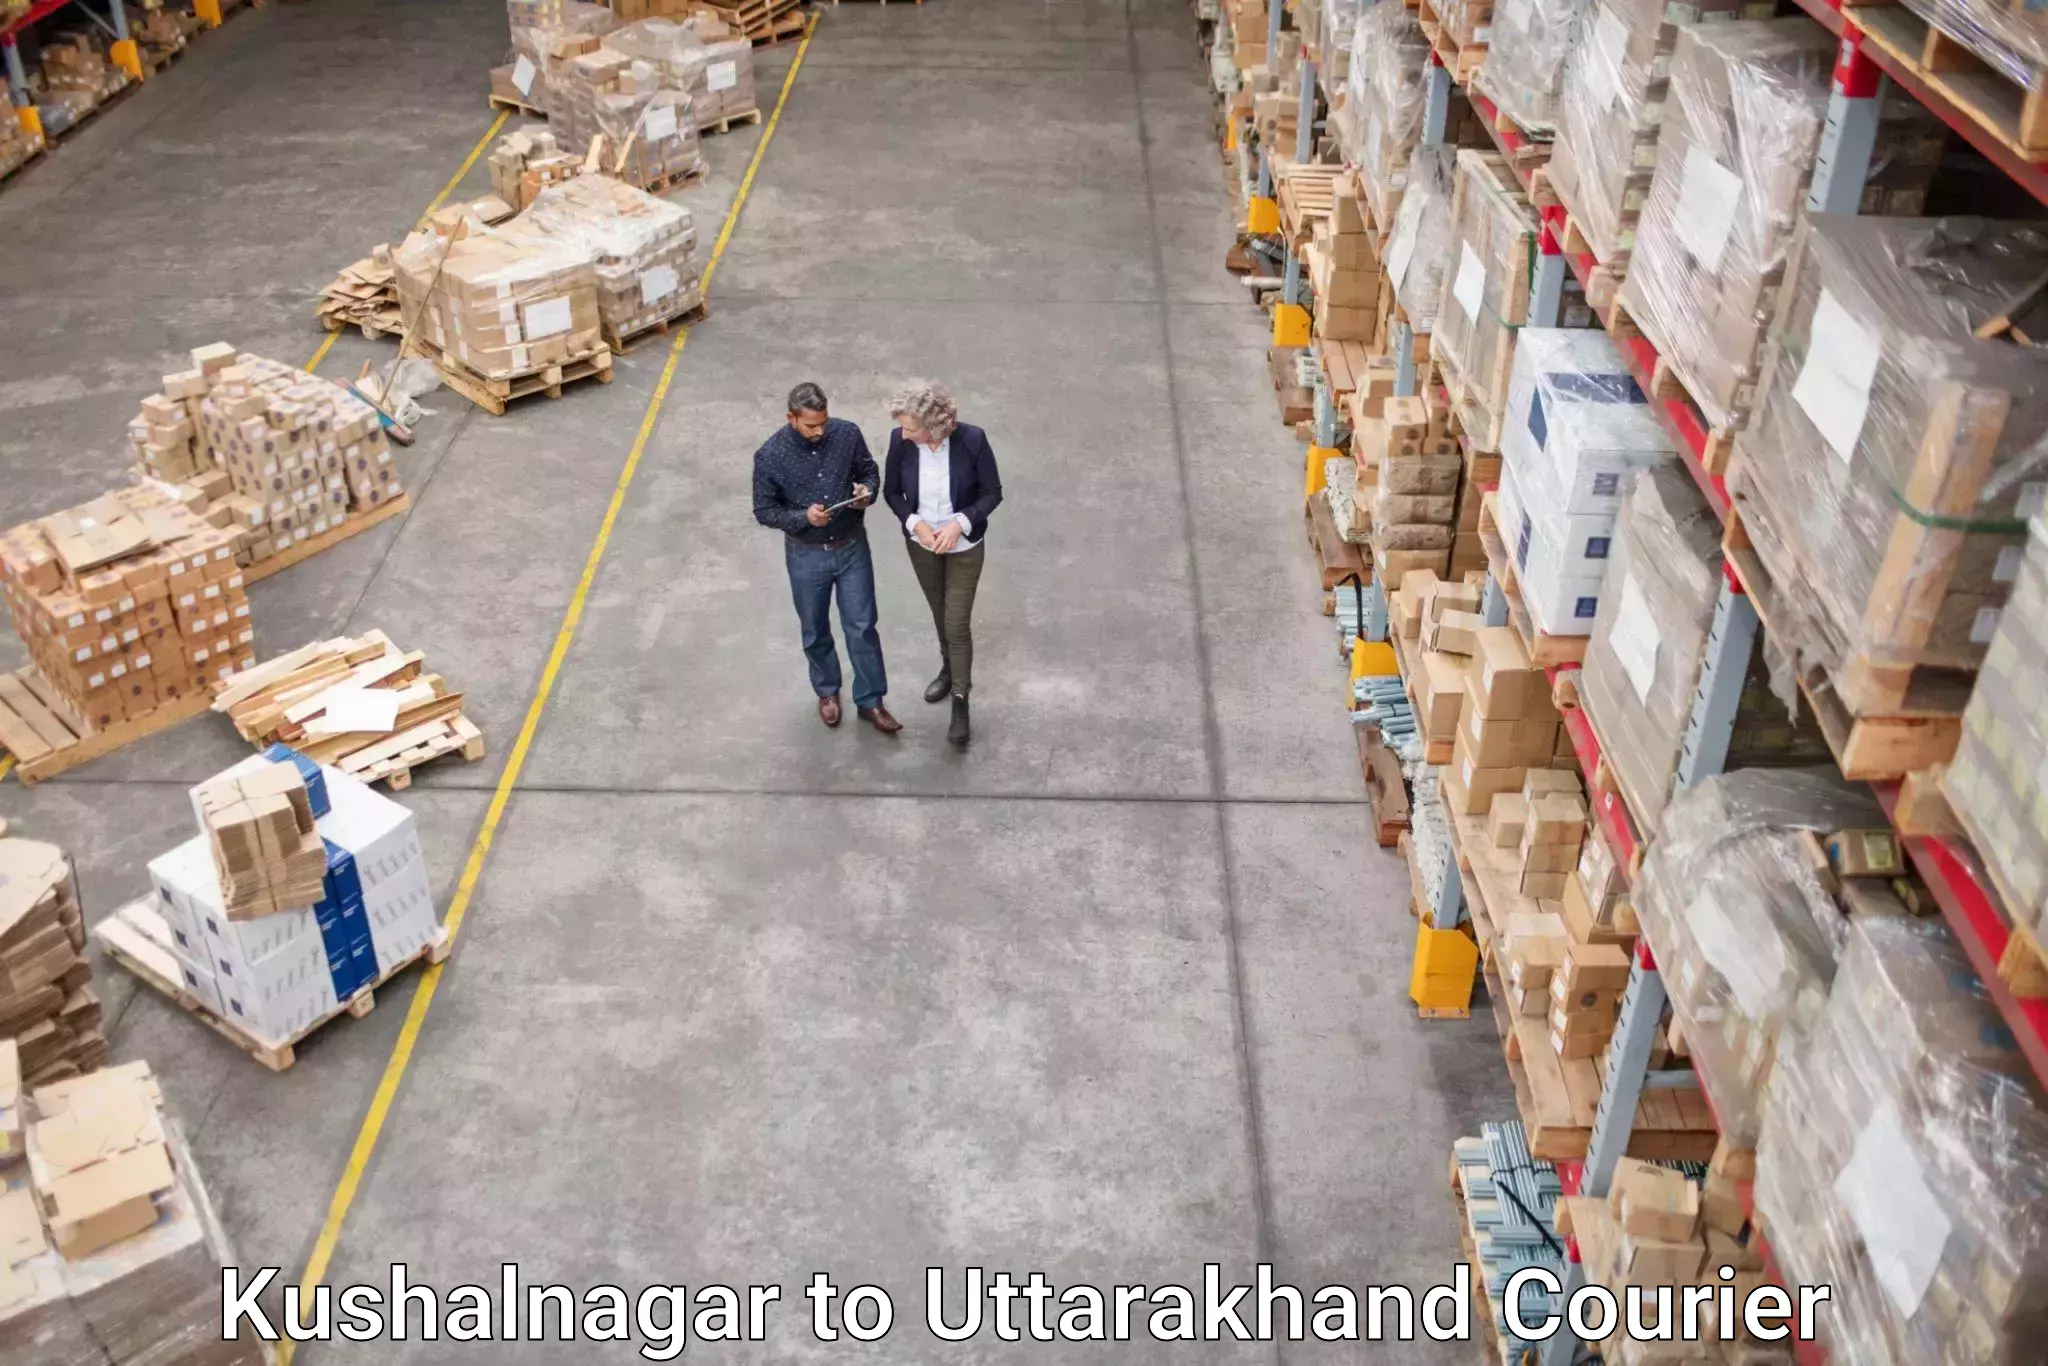 Courier service innovation Kushalnagar to Bageshwar